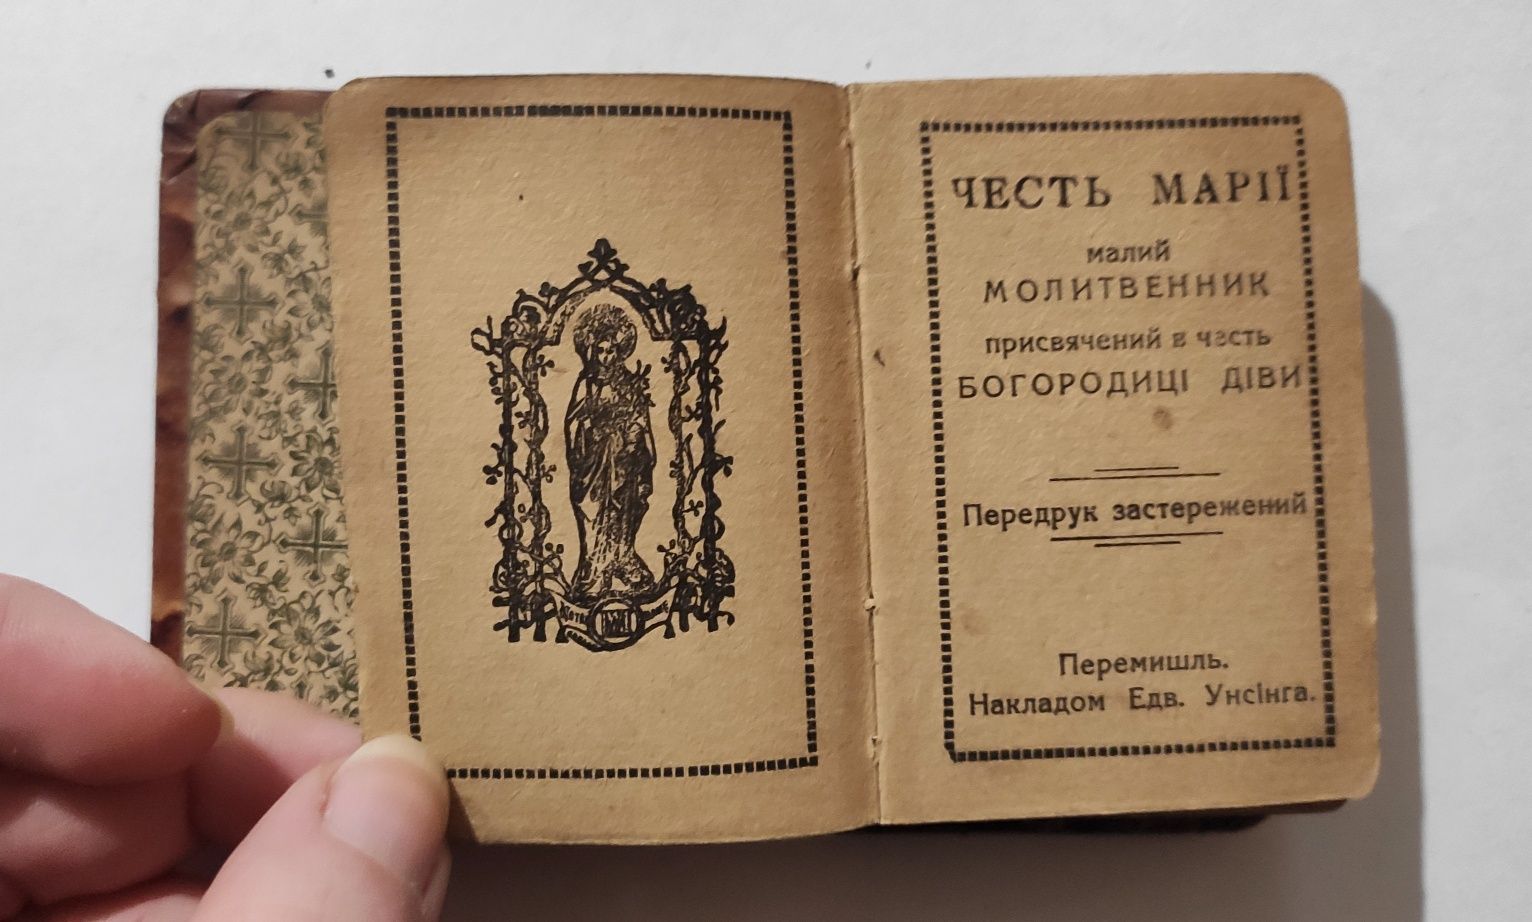 Малий молитвенник Честь Марії 1915 р